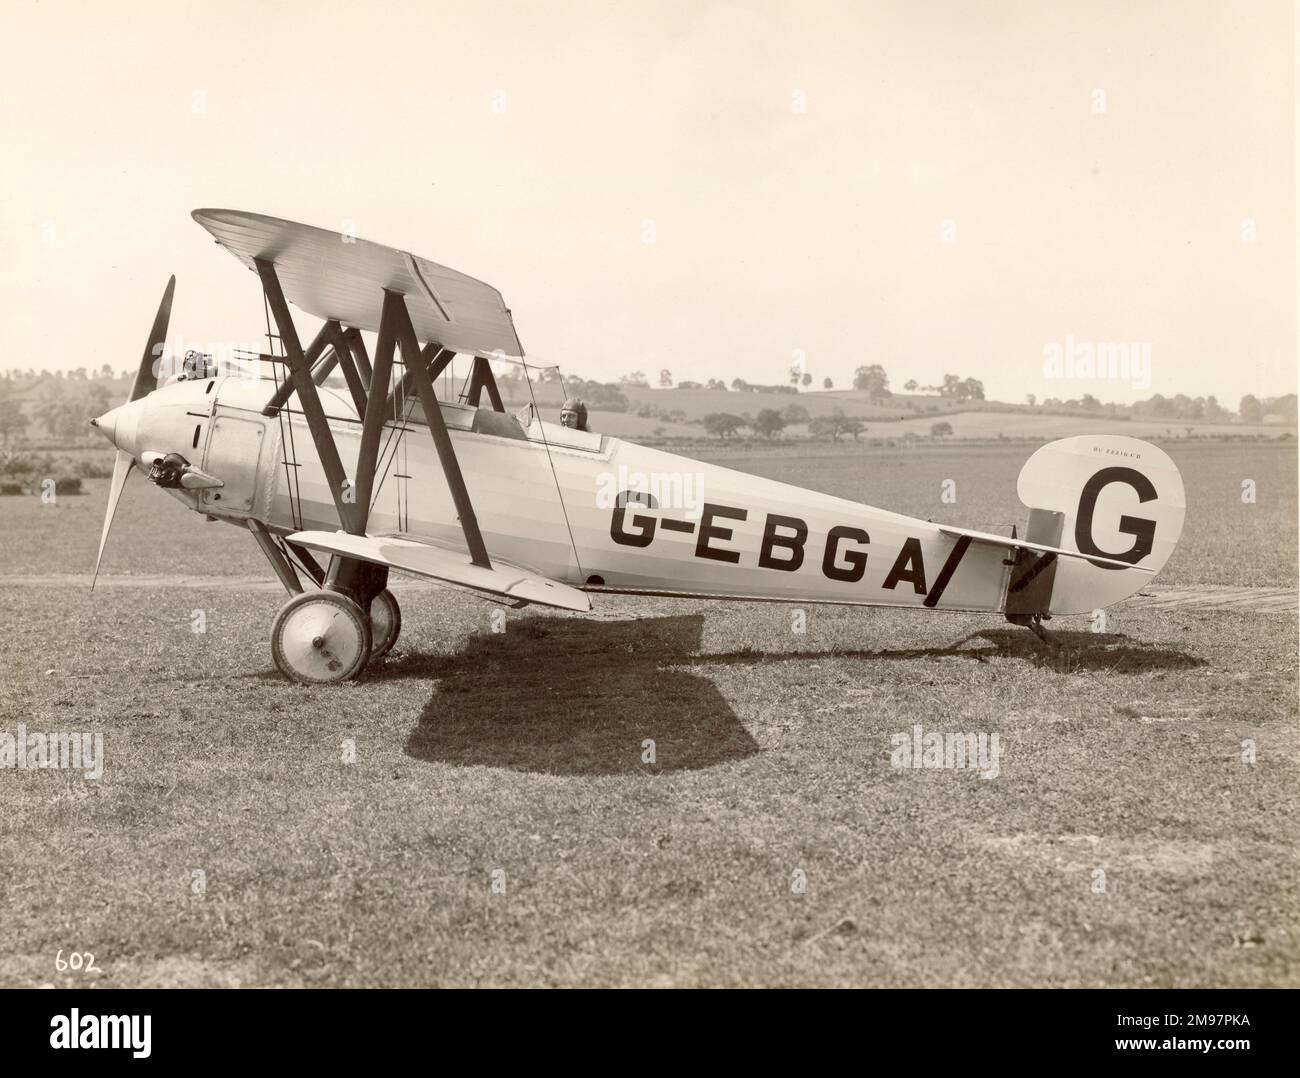 Bristol PTM, G-EBGA, Wettkampfflugzeug, 83A Lucifer. Stockfoto